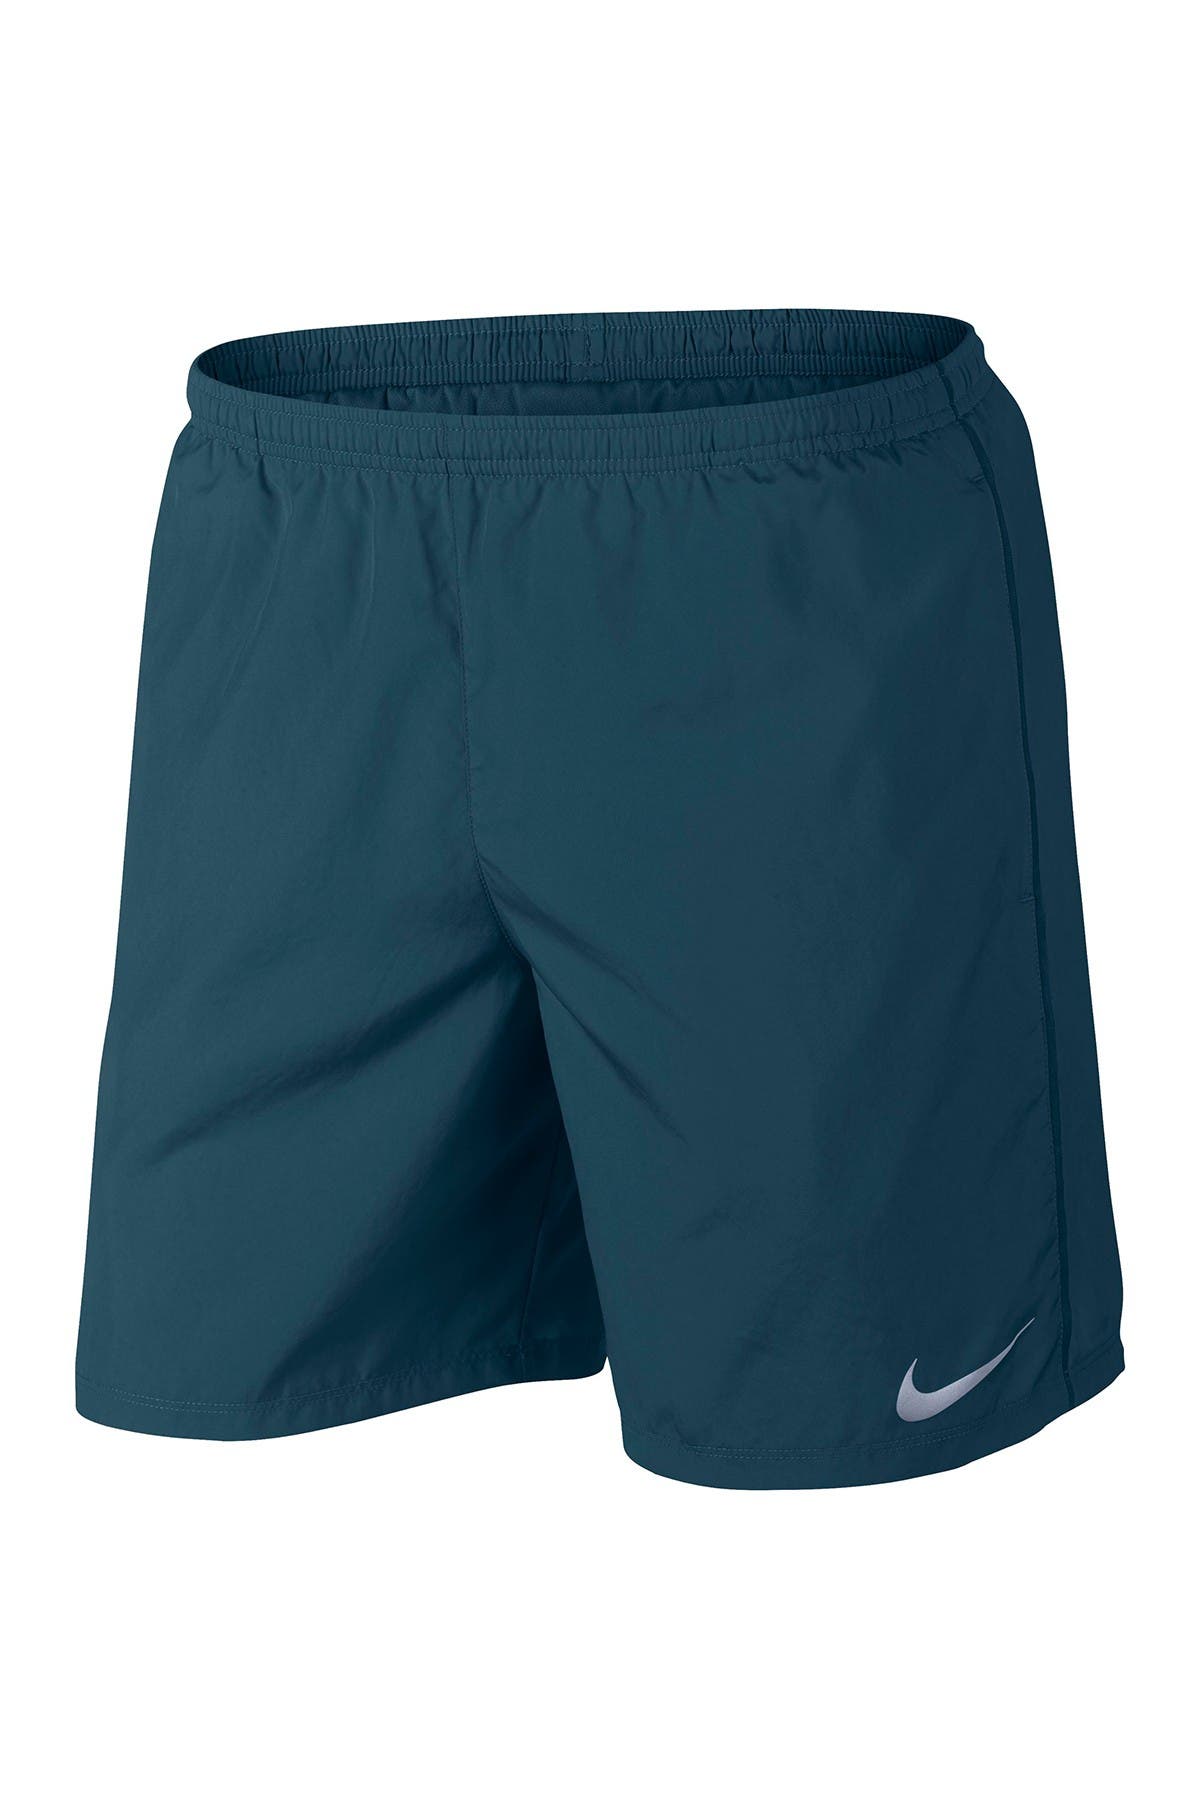 Nike | Dri-FIT Running Shorts 